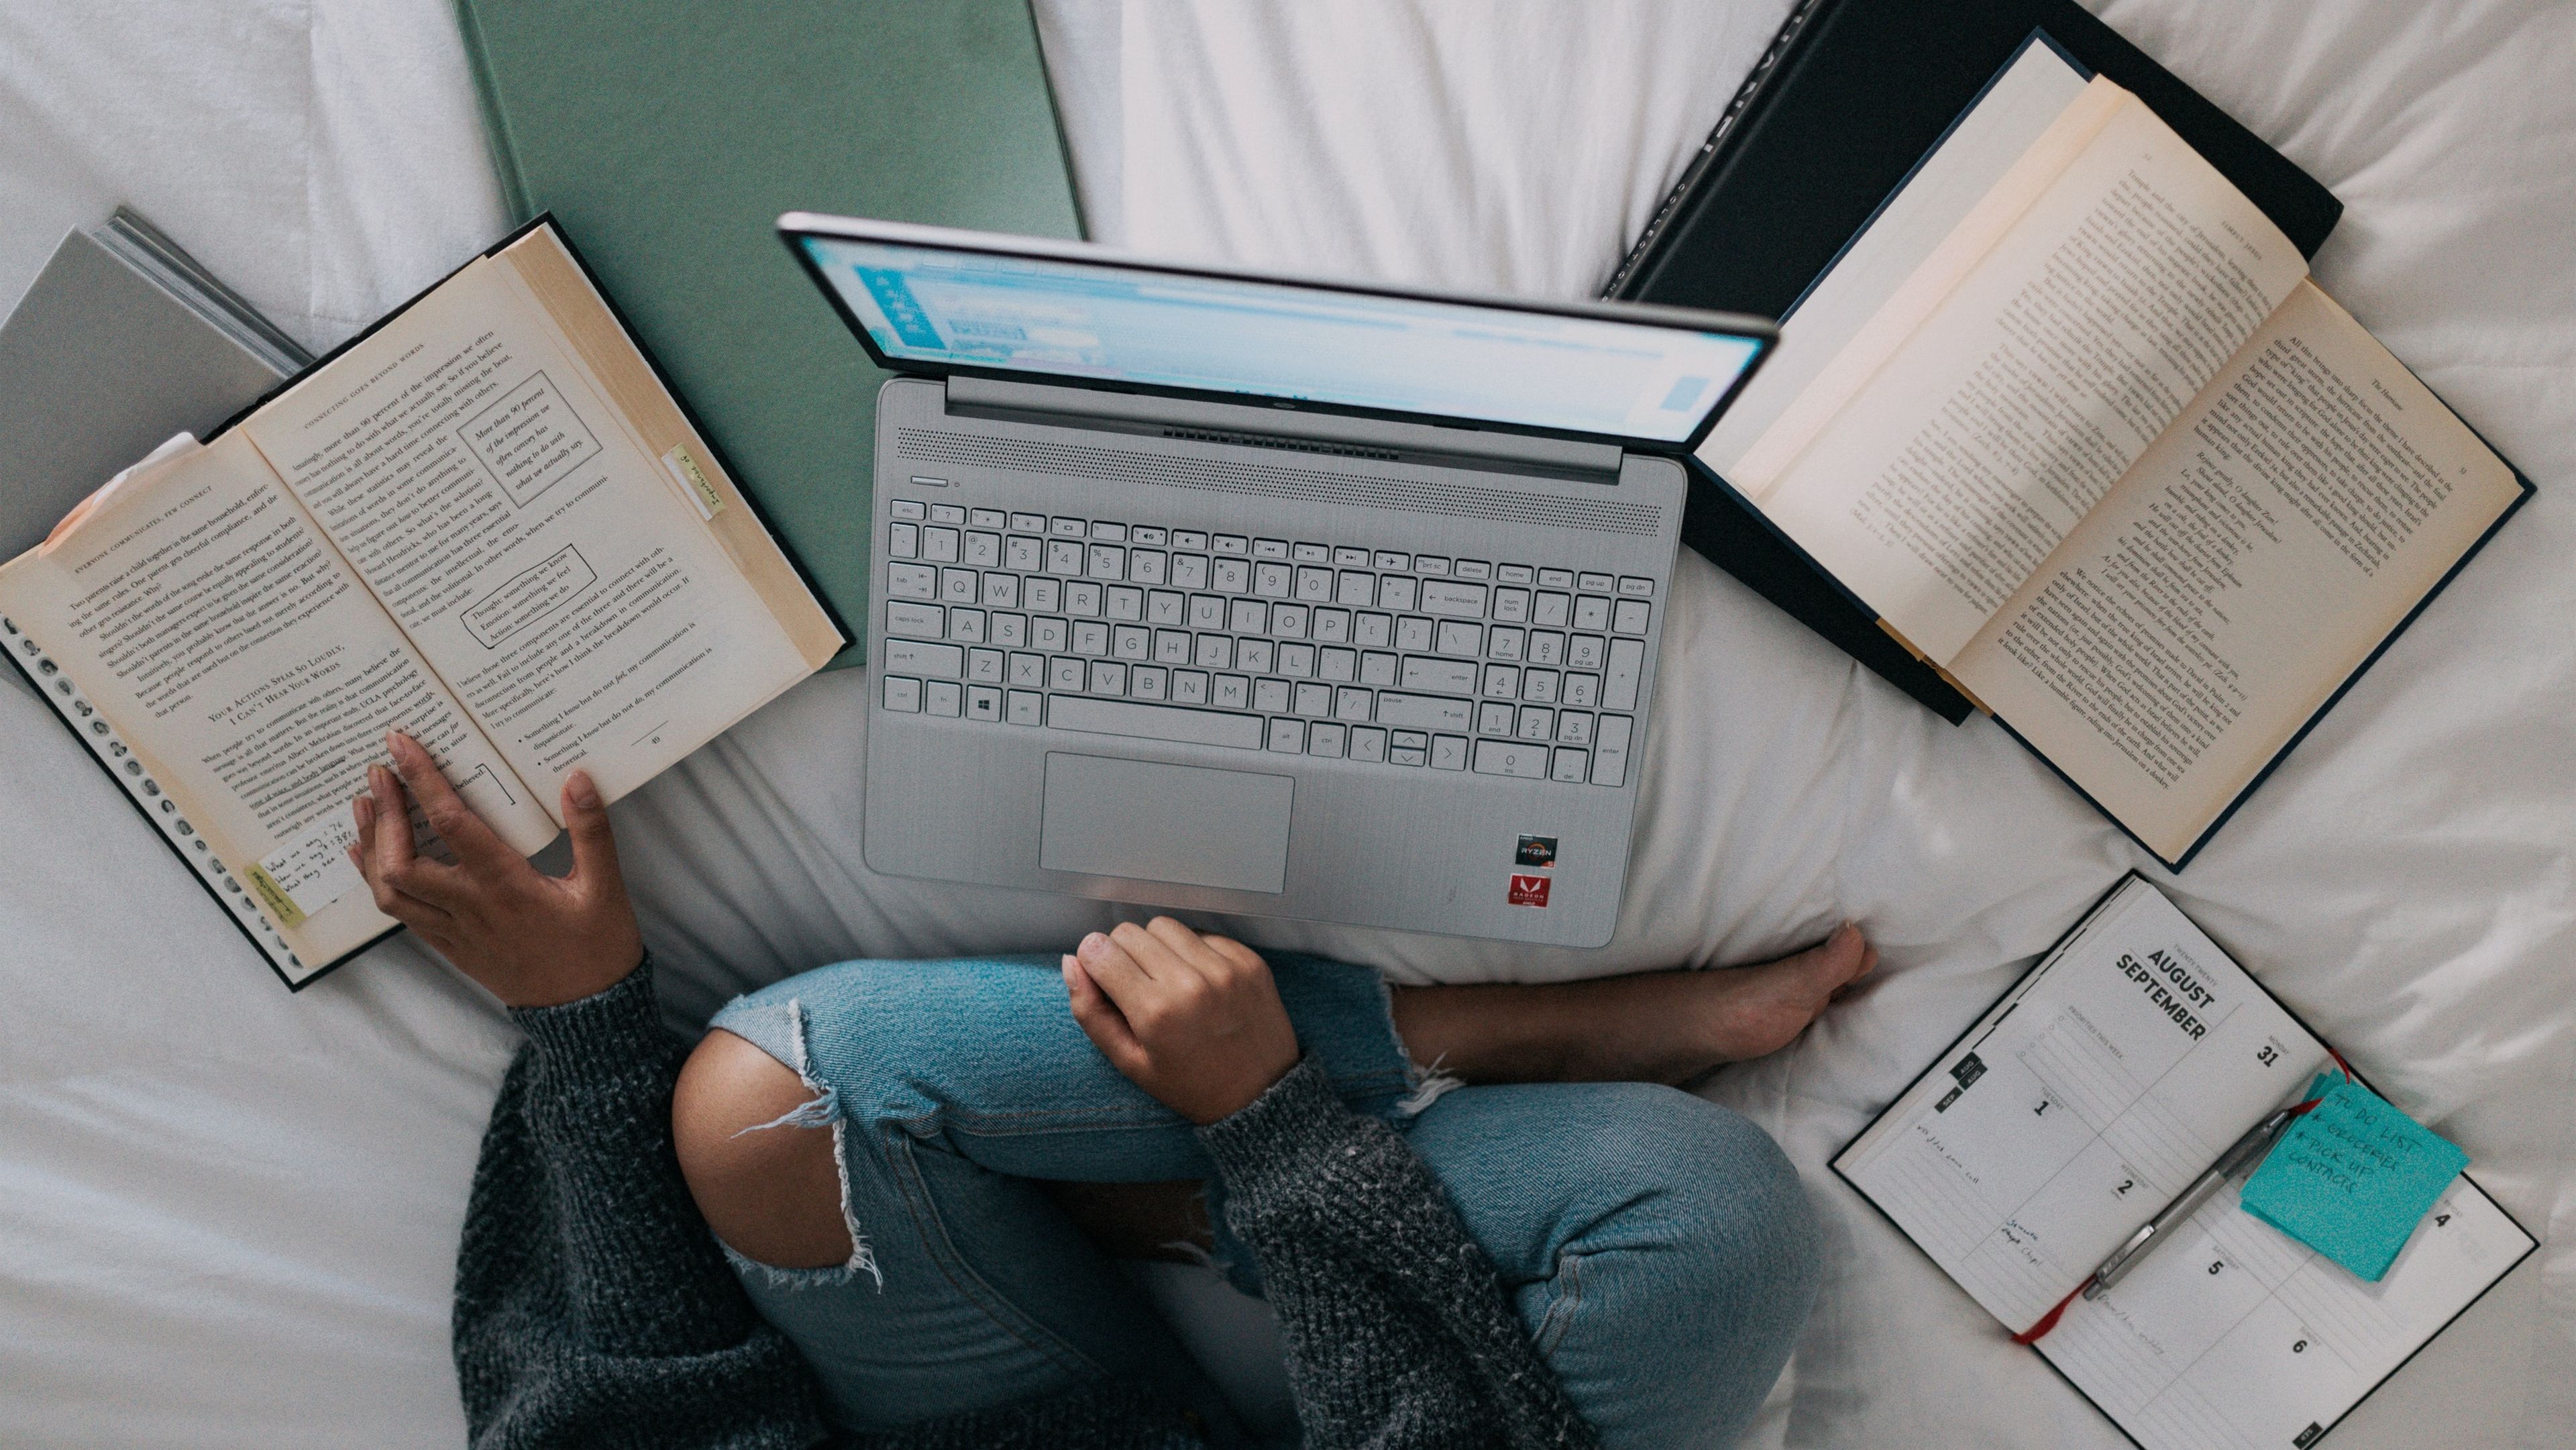 Mujer estudiando con un portátil y libros en una cama